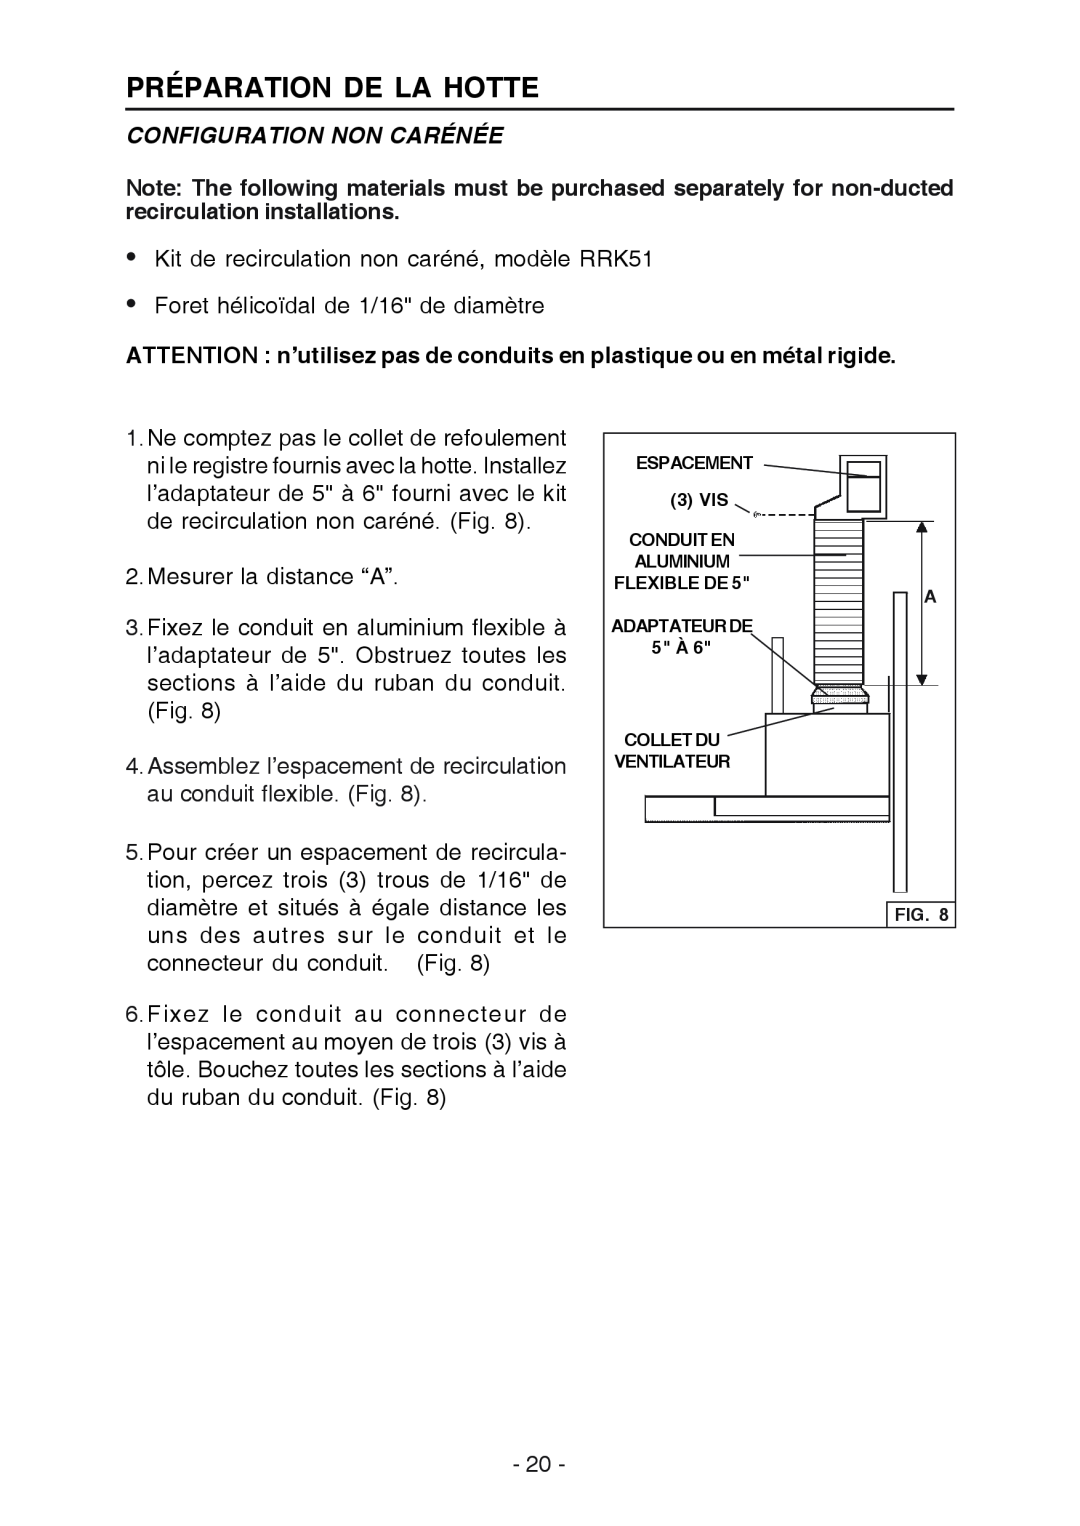 Broan RM533604 manual Configuration Non Carénée, ATTENTION n’utilisez pas de conduits en plastique ou en métal rigide 